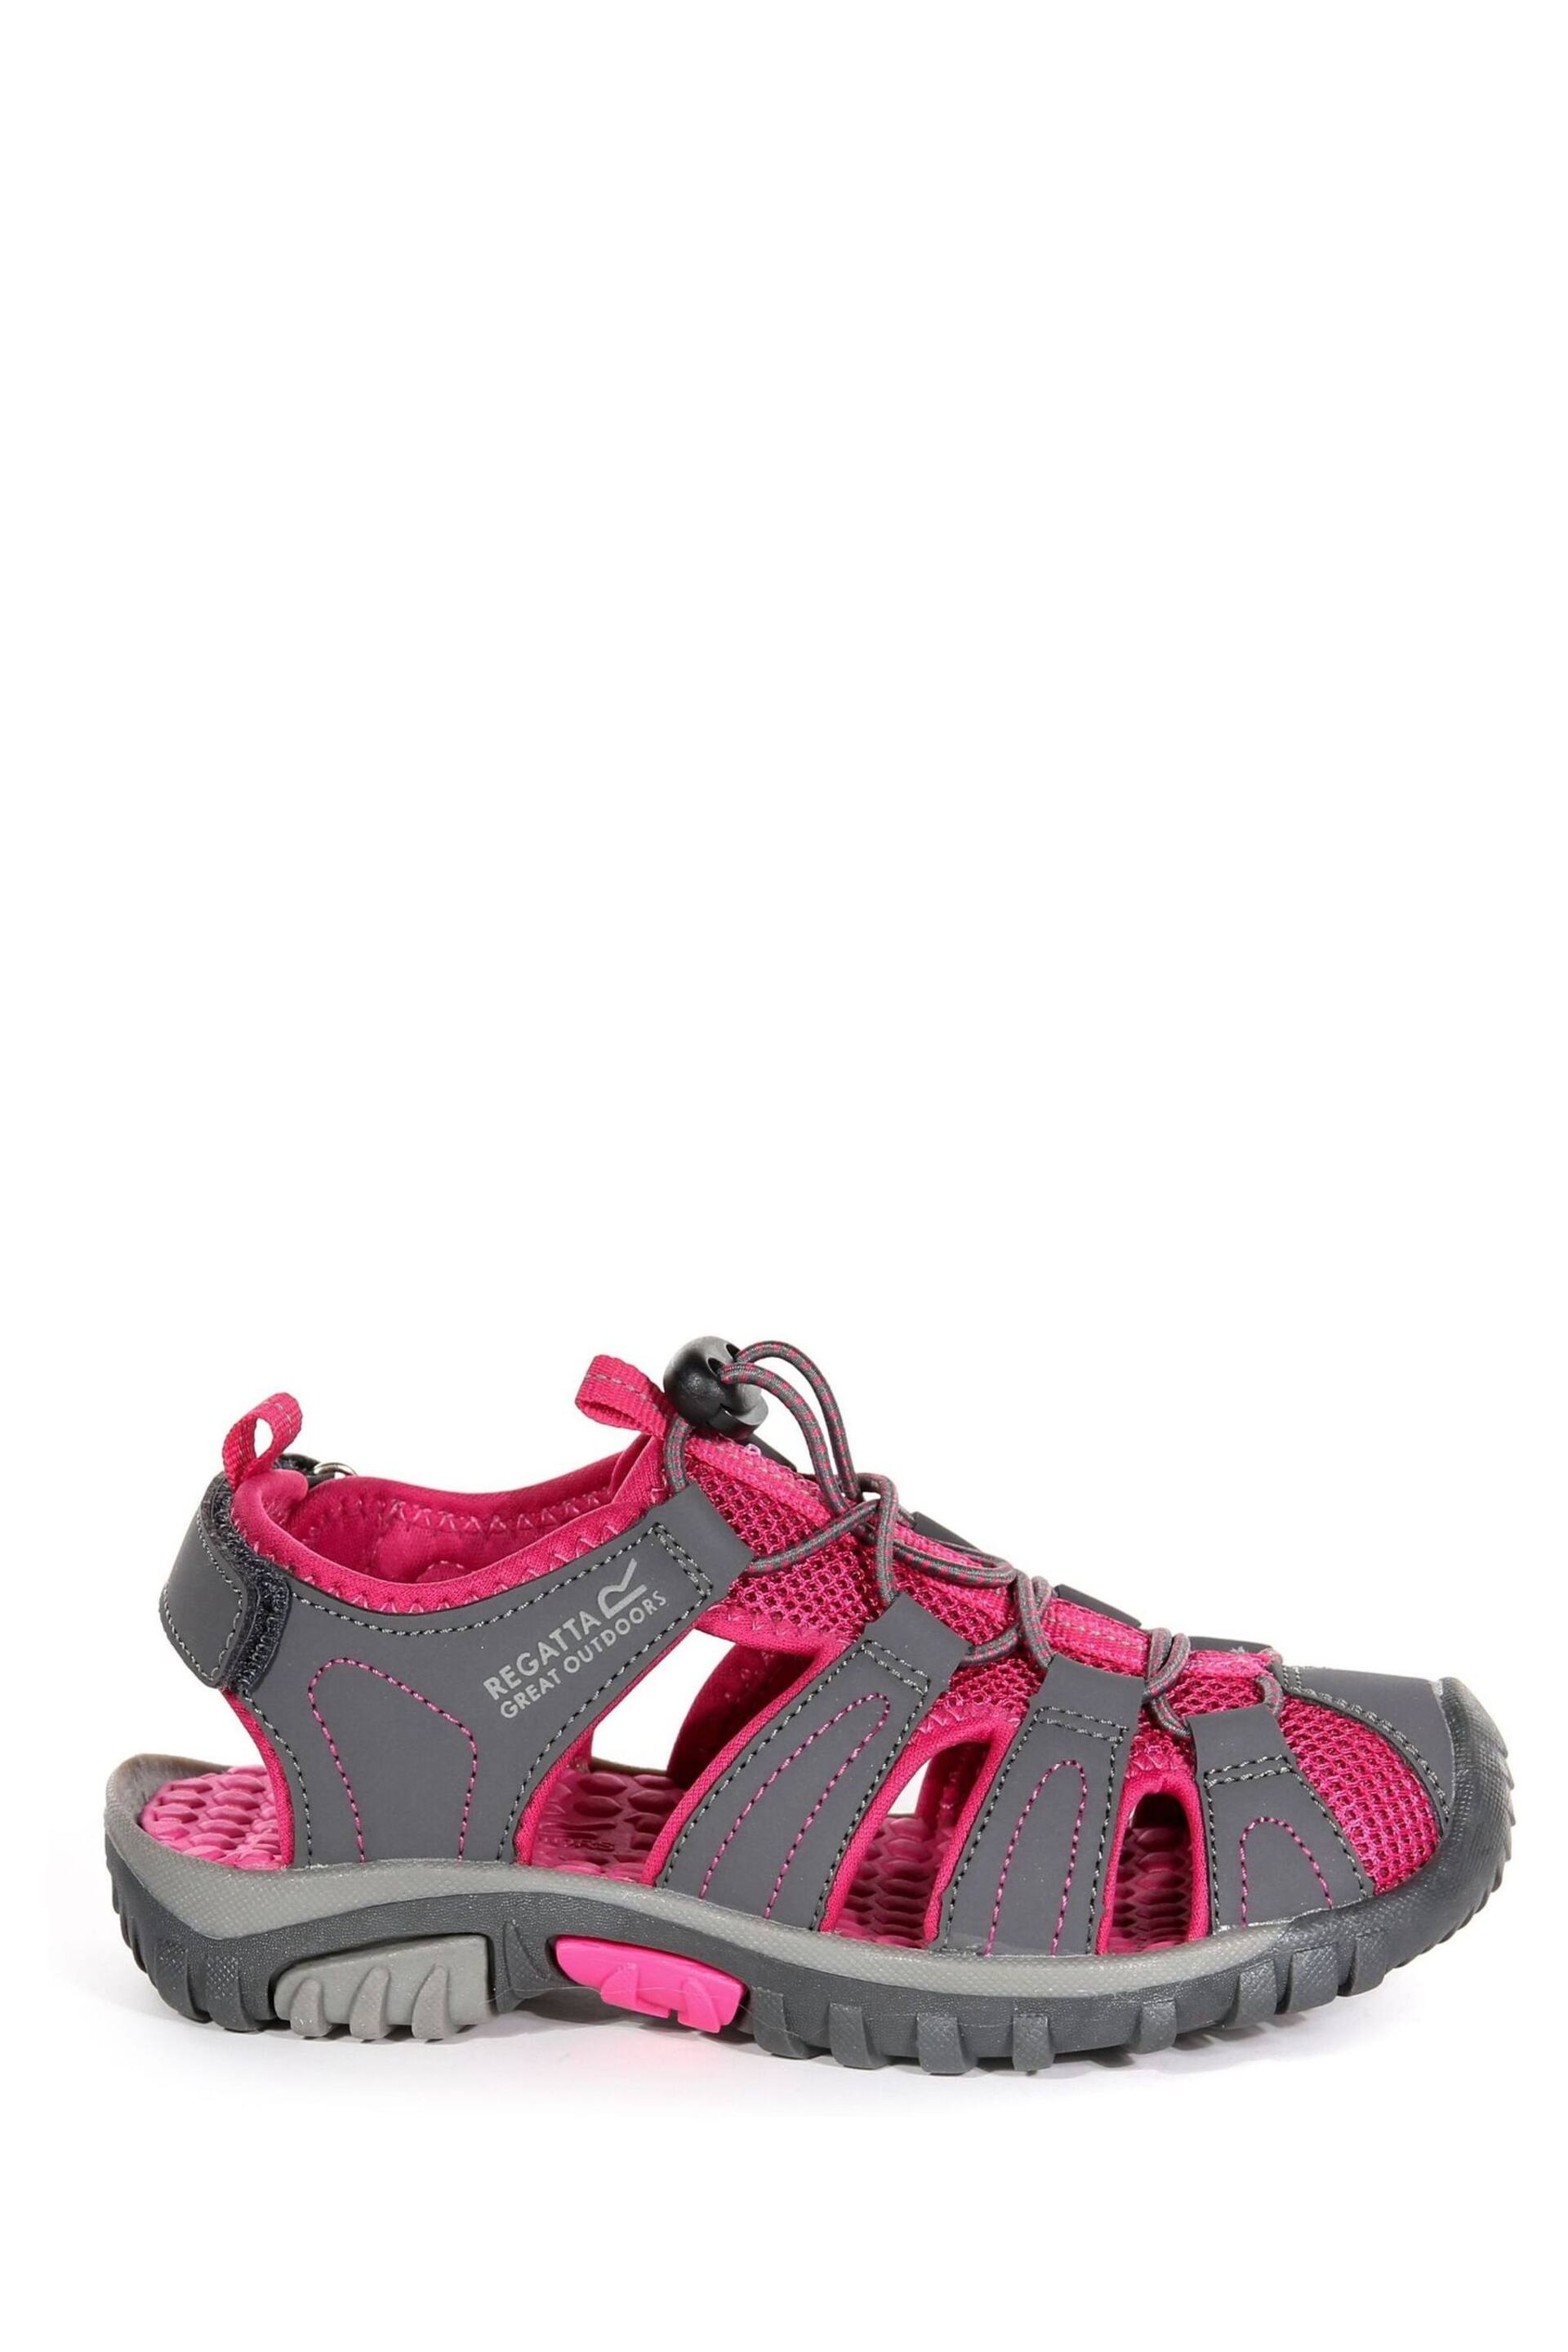 Regatta Grey Junior Westshore Sandals - Image 1 of 6